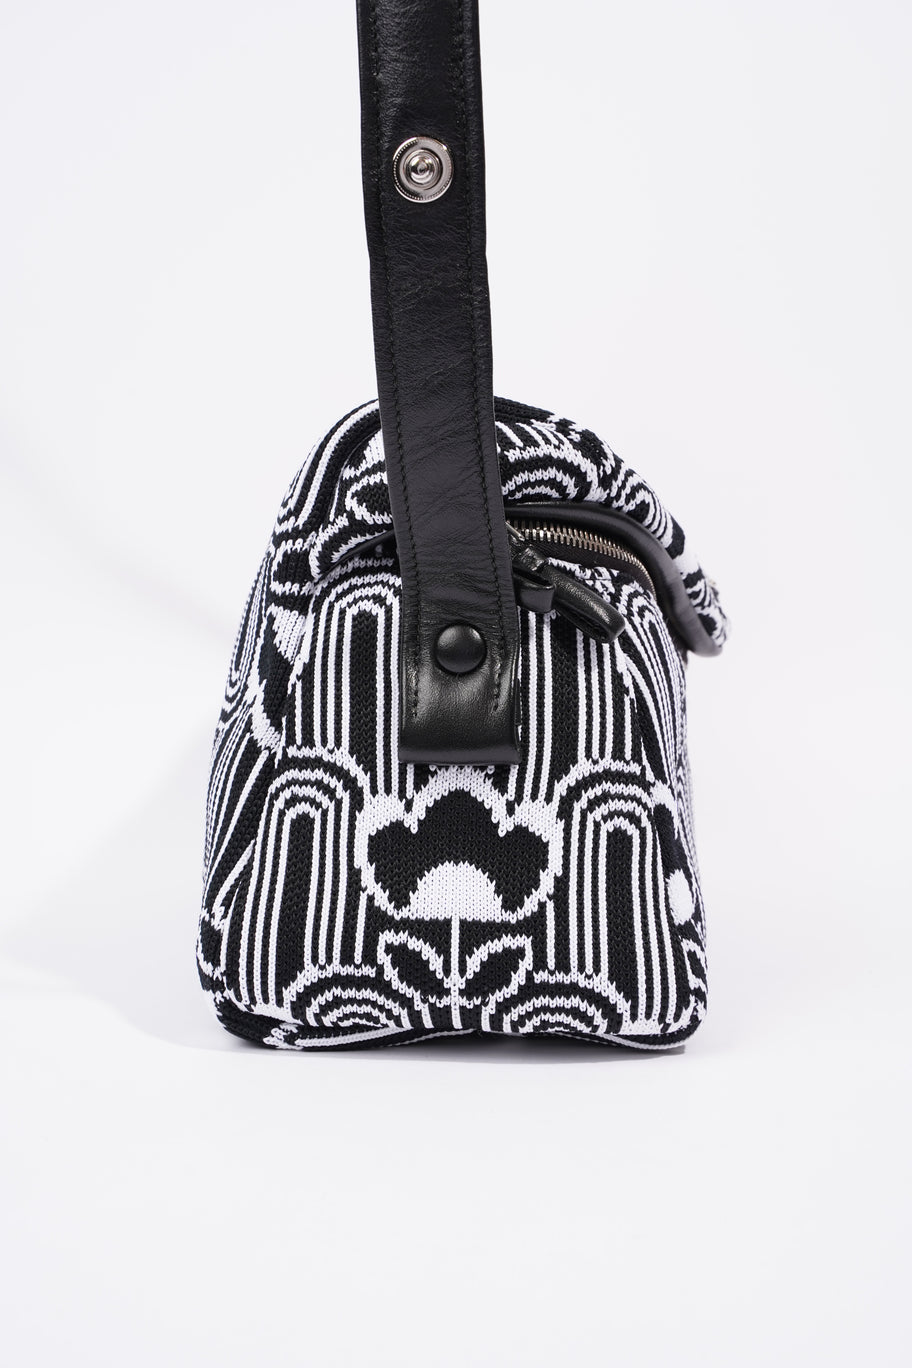 Signaux Jacquard Shoulder Bag Black / White Fabric Image 4